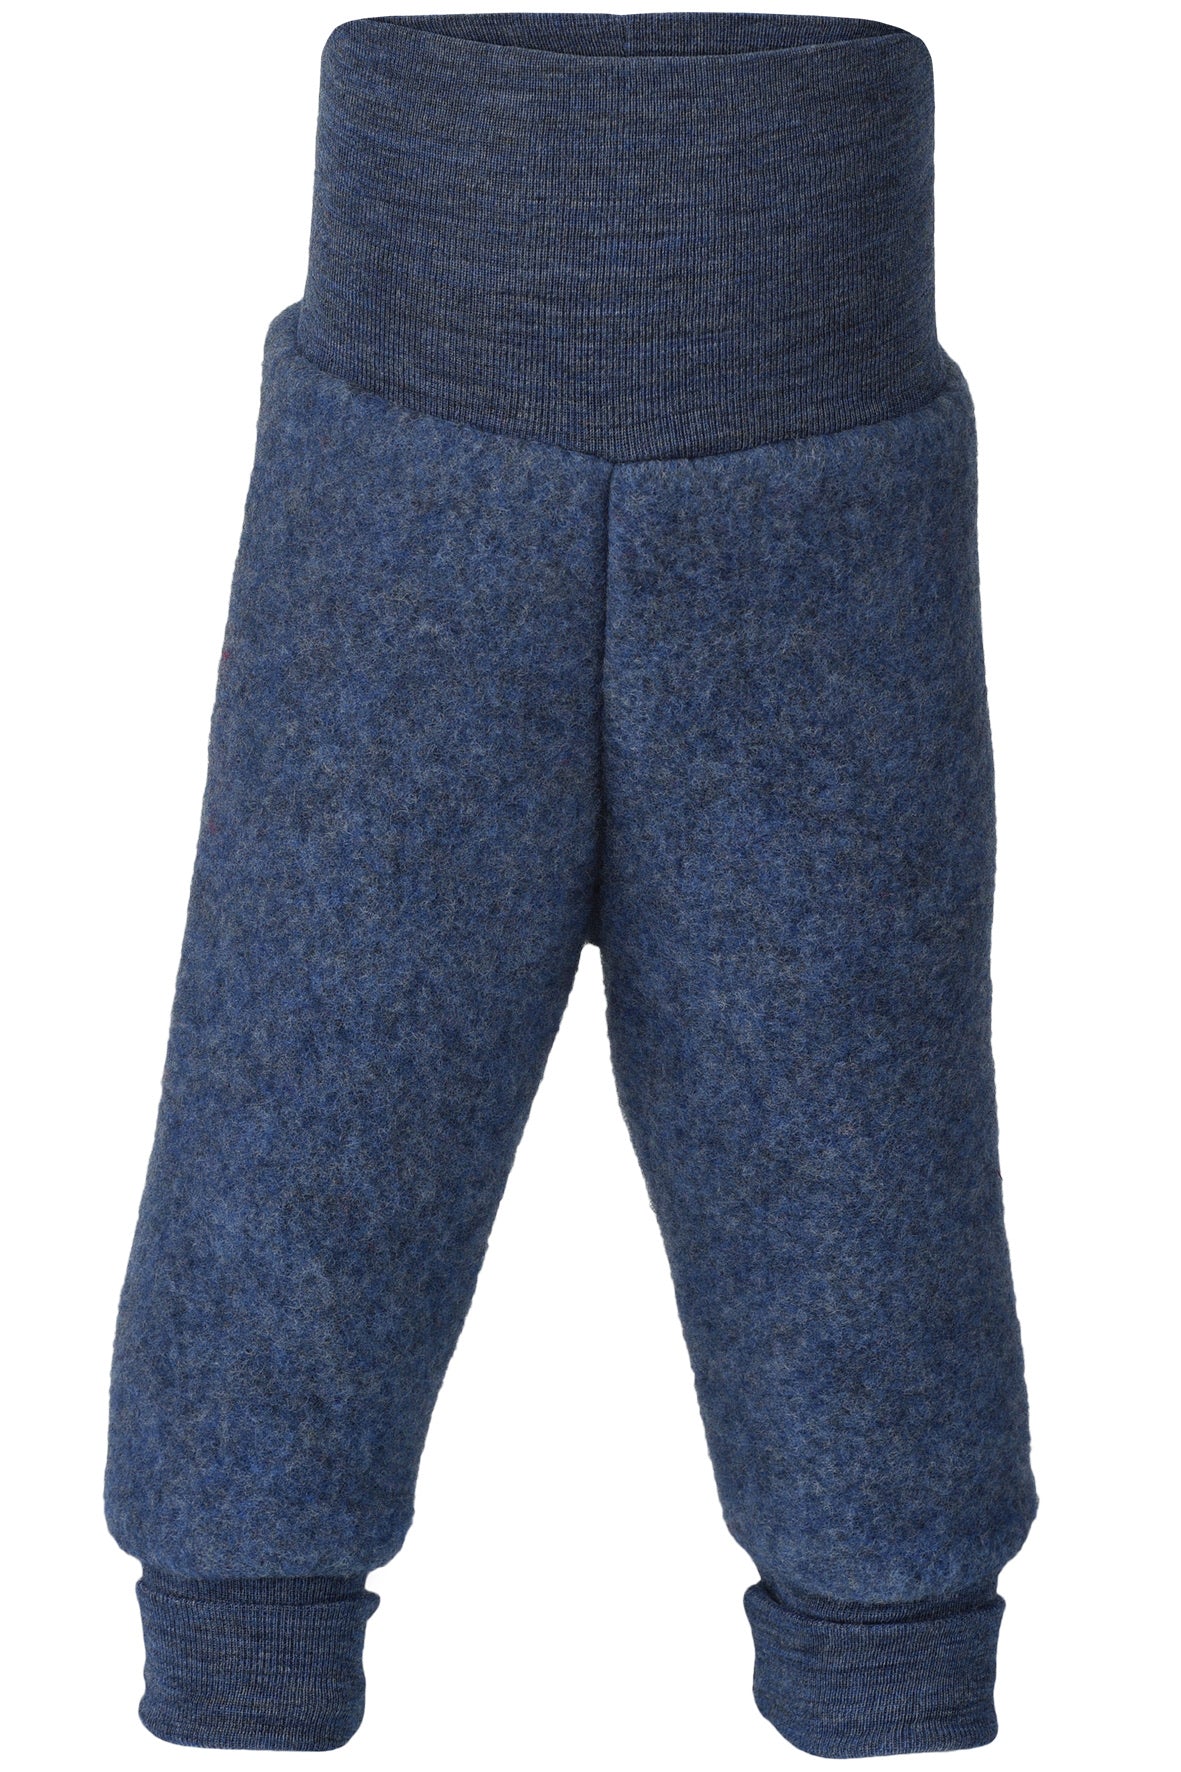 Engel wool fleece pants in blue melange 